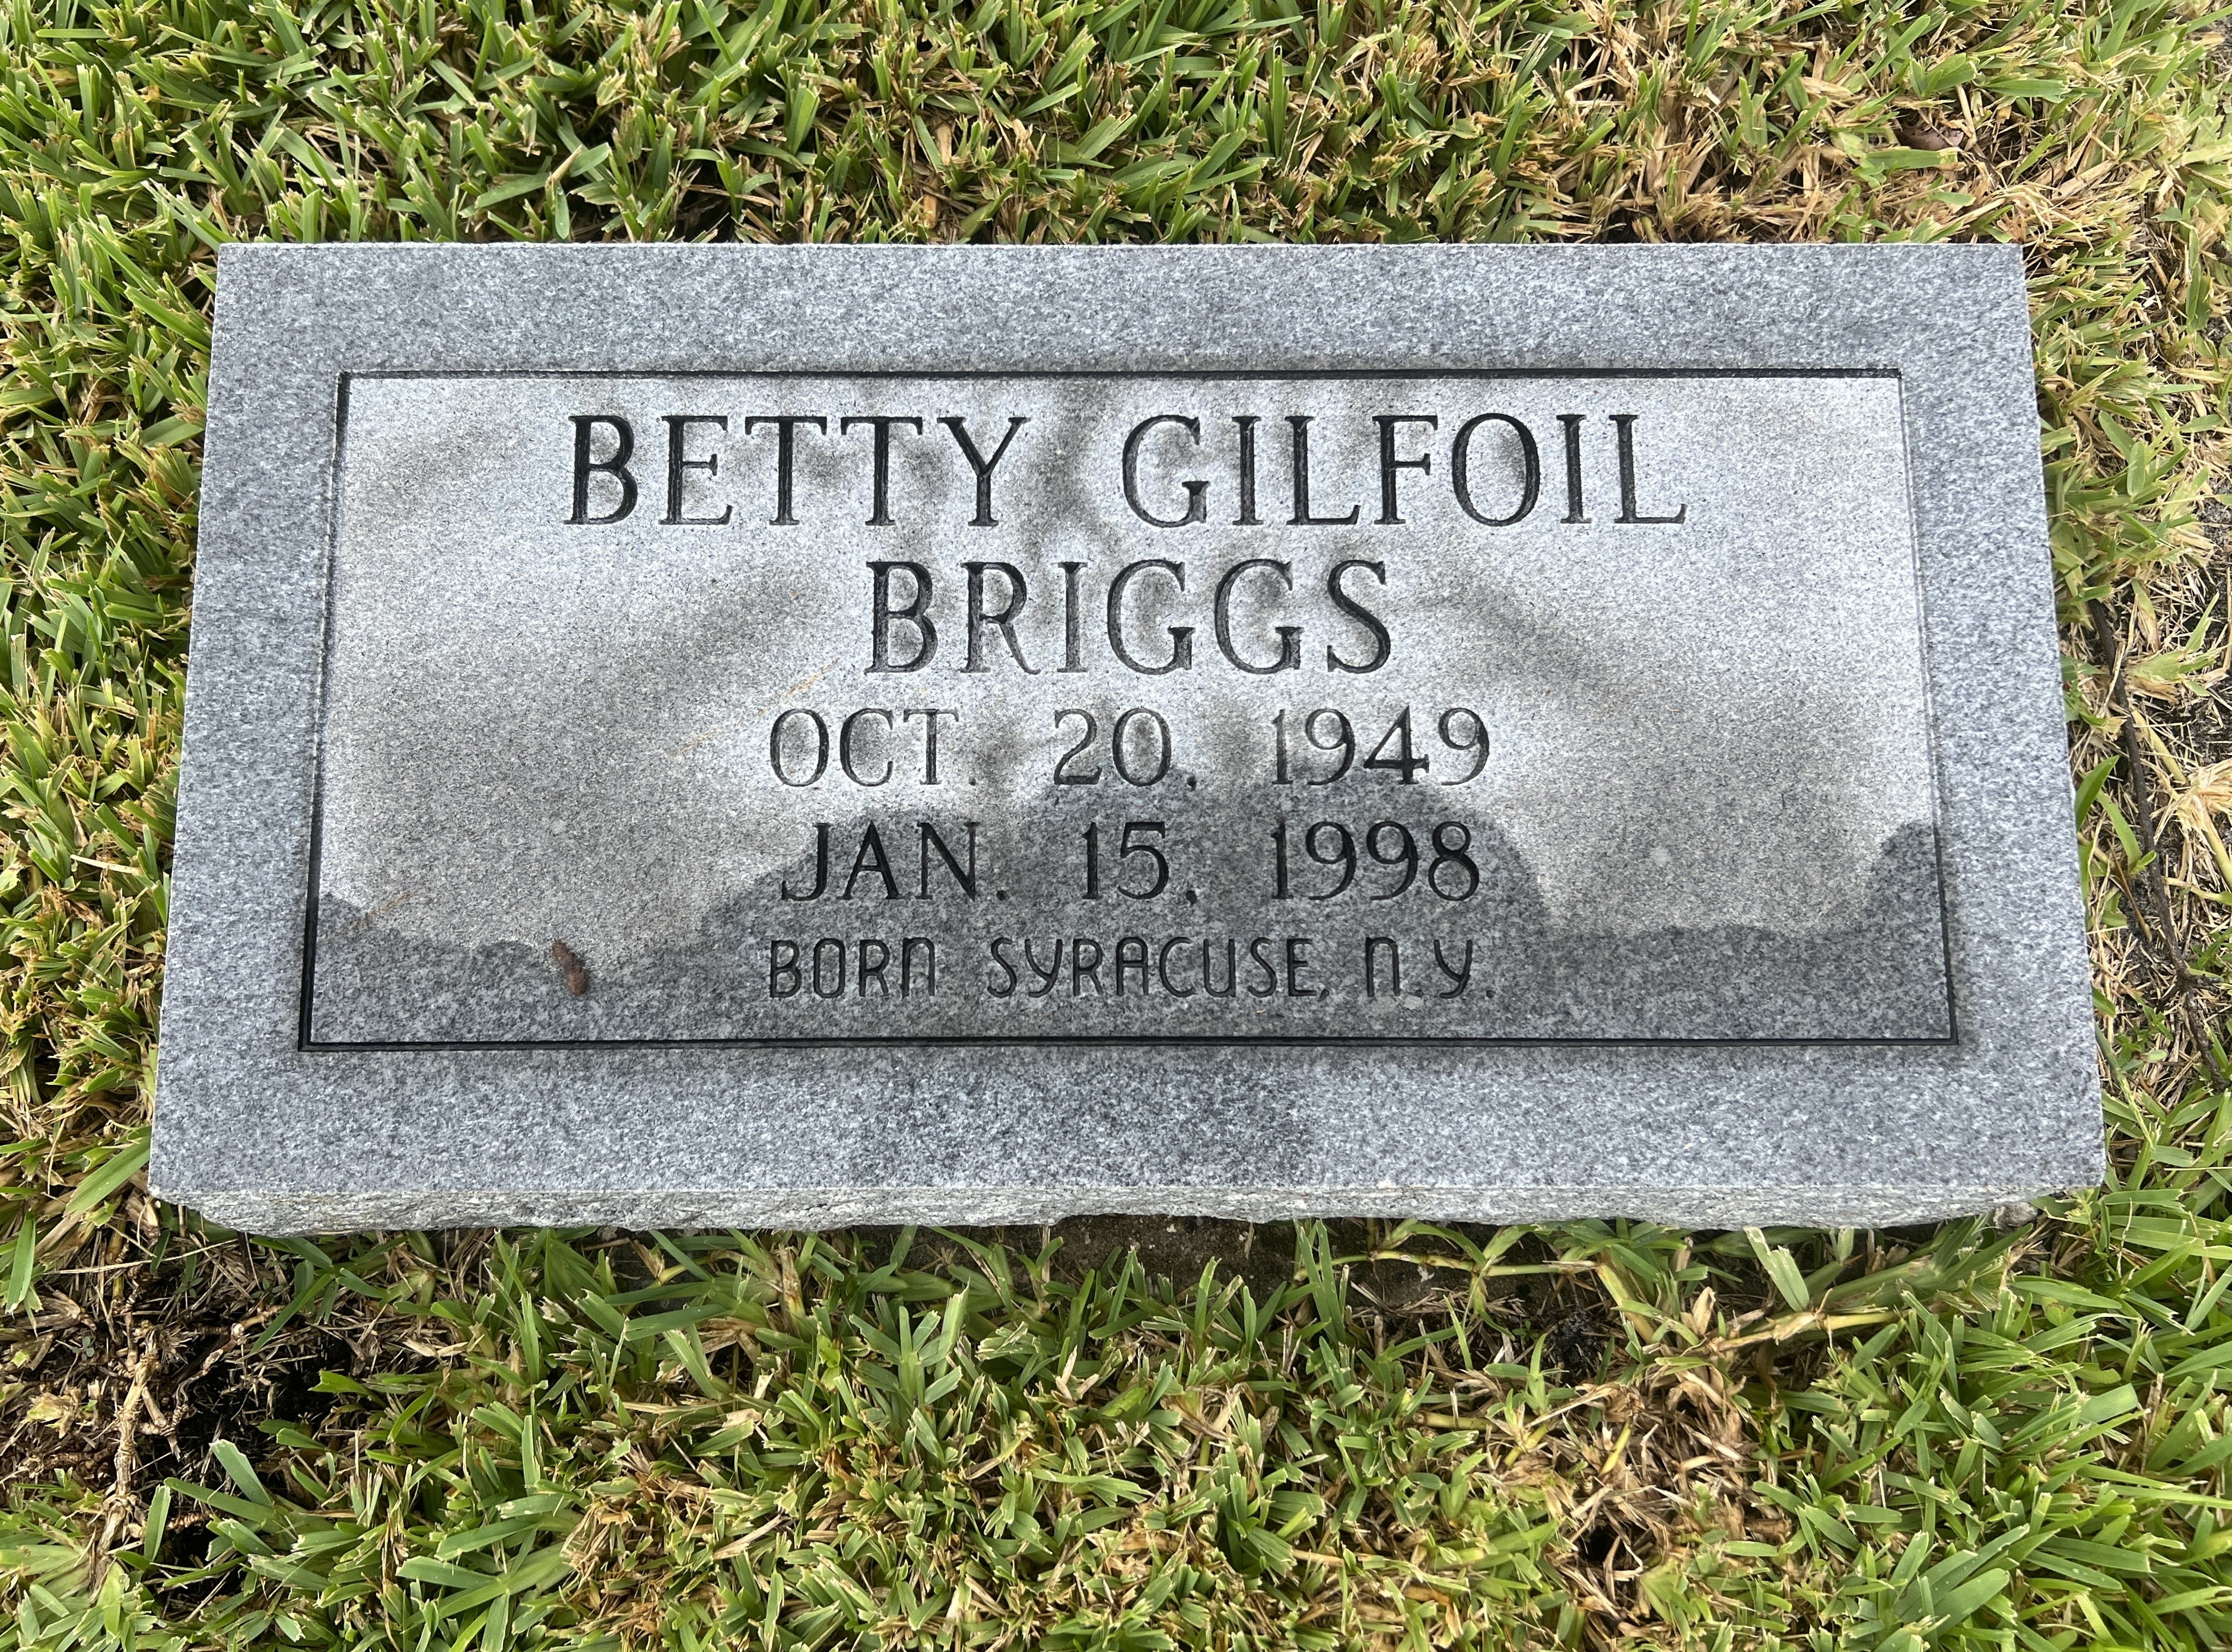 Betty Gilfoil Briggs